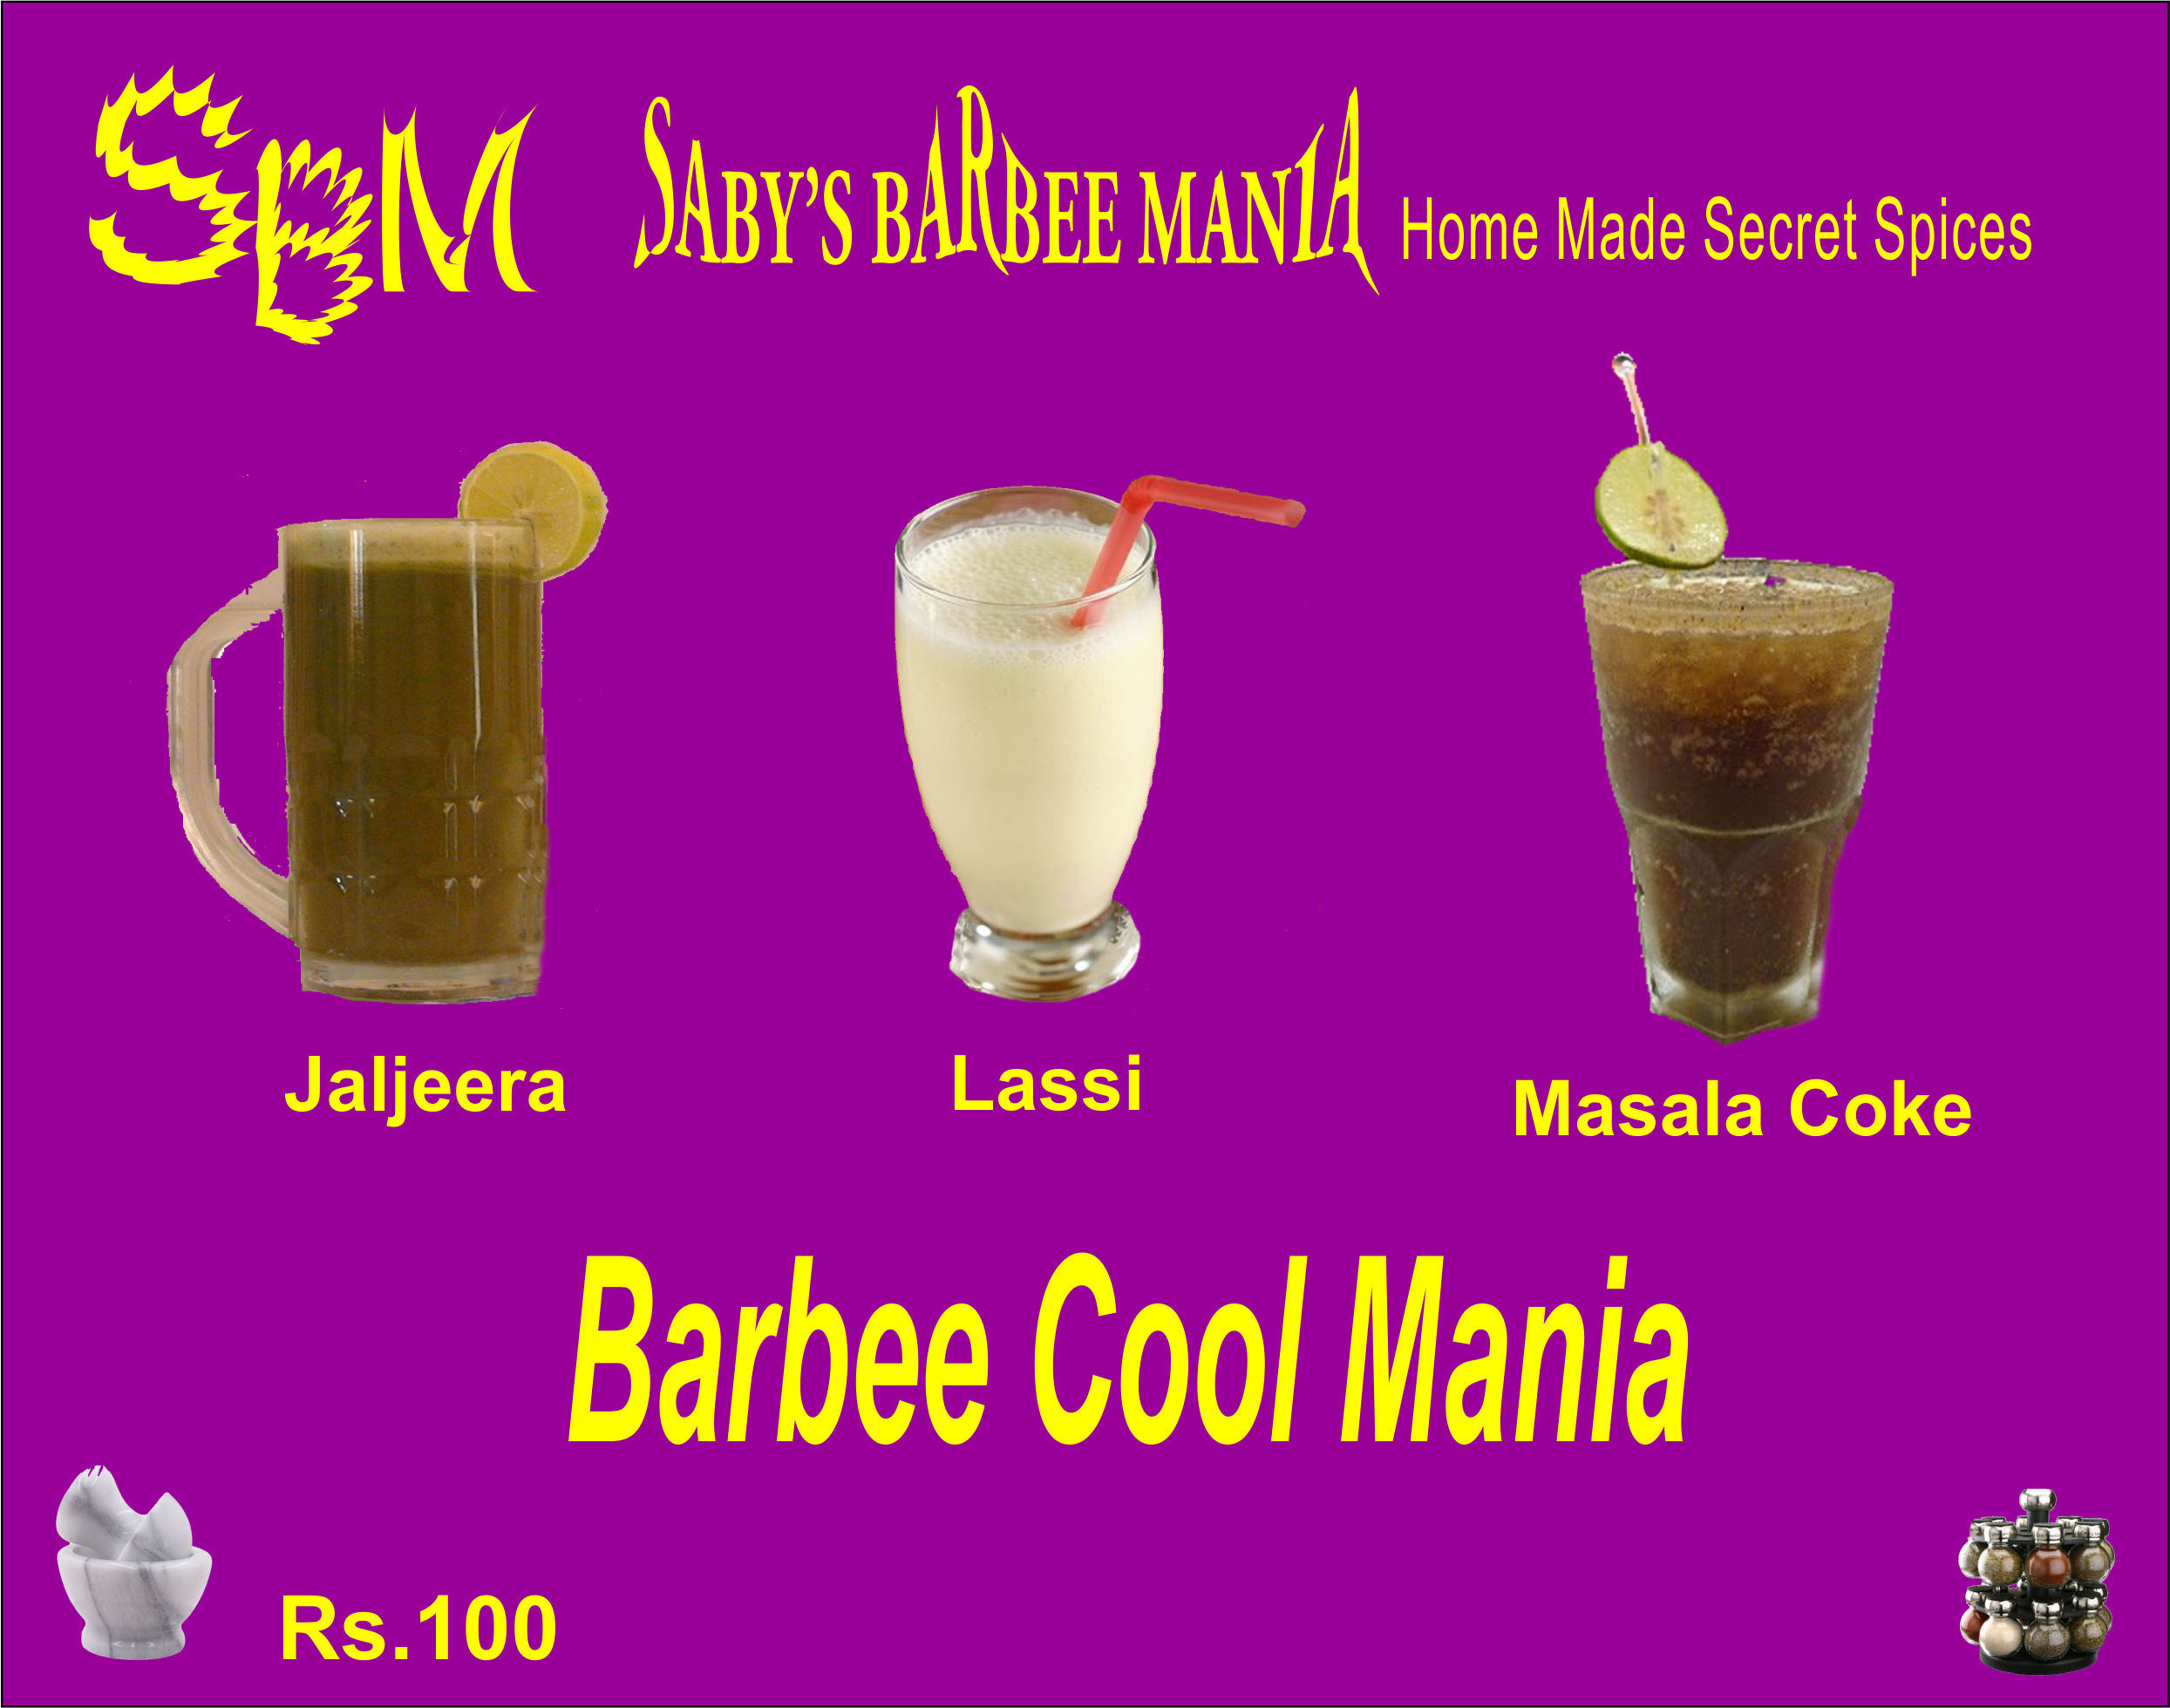 Barbee Cool Mania